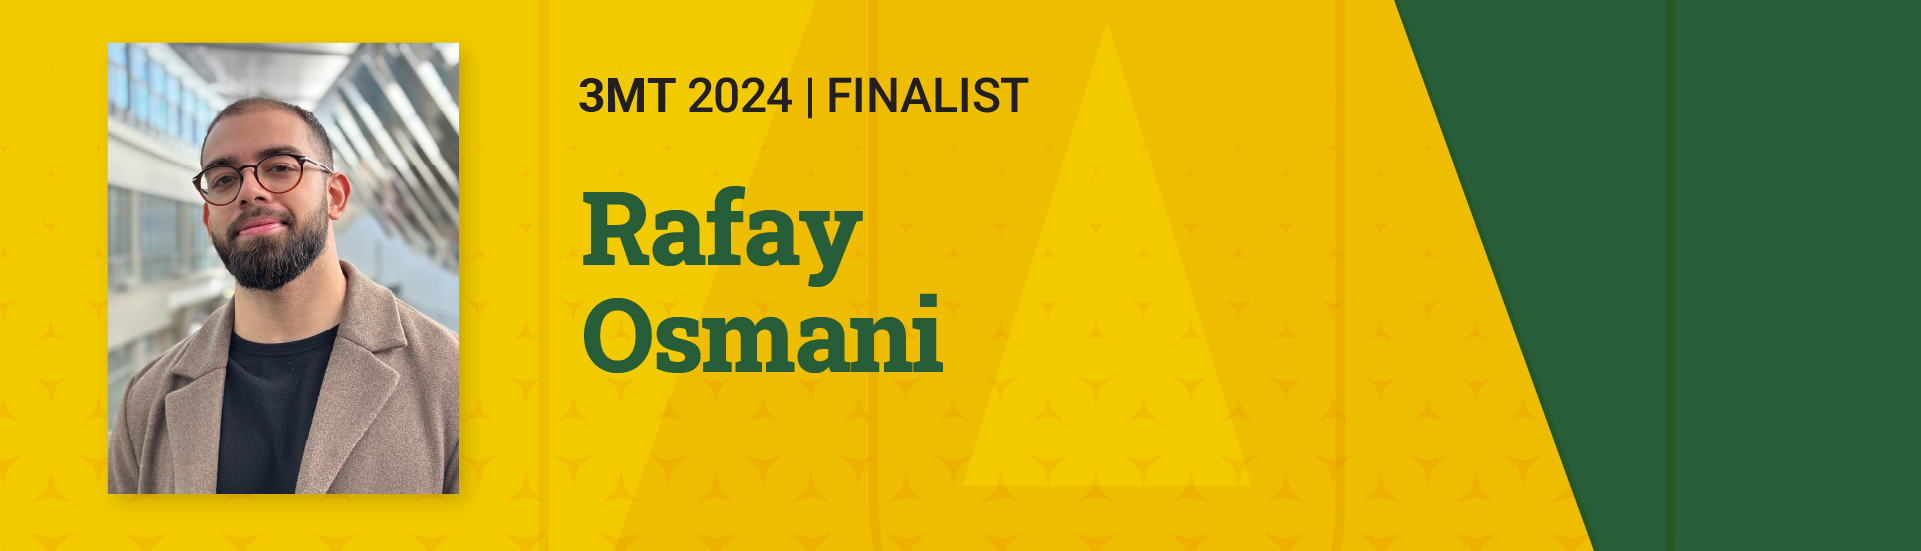 3MT 2024 Finalist Rafay Osmani